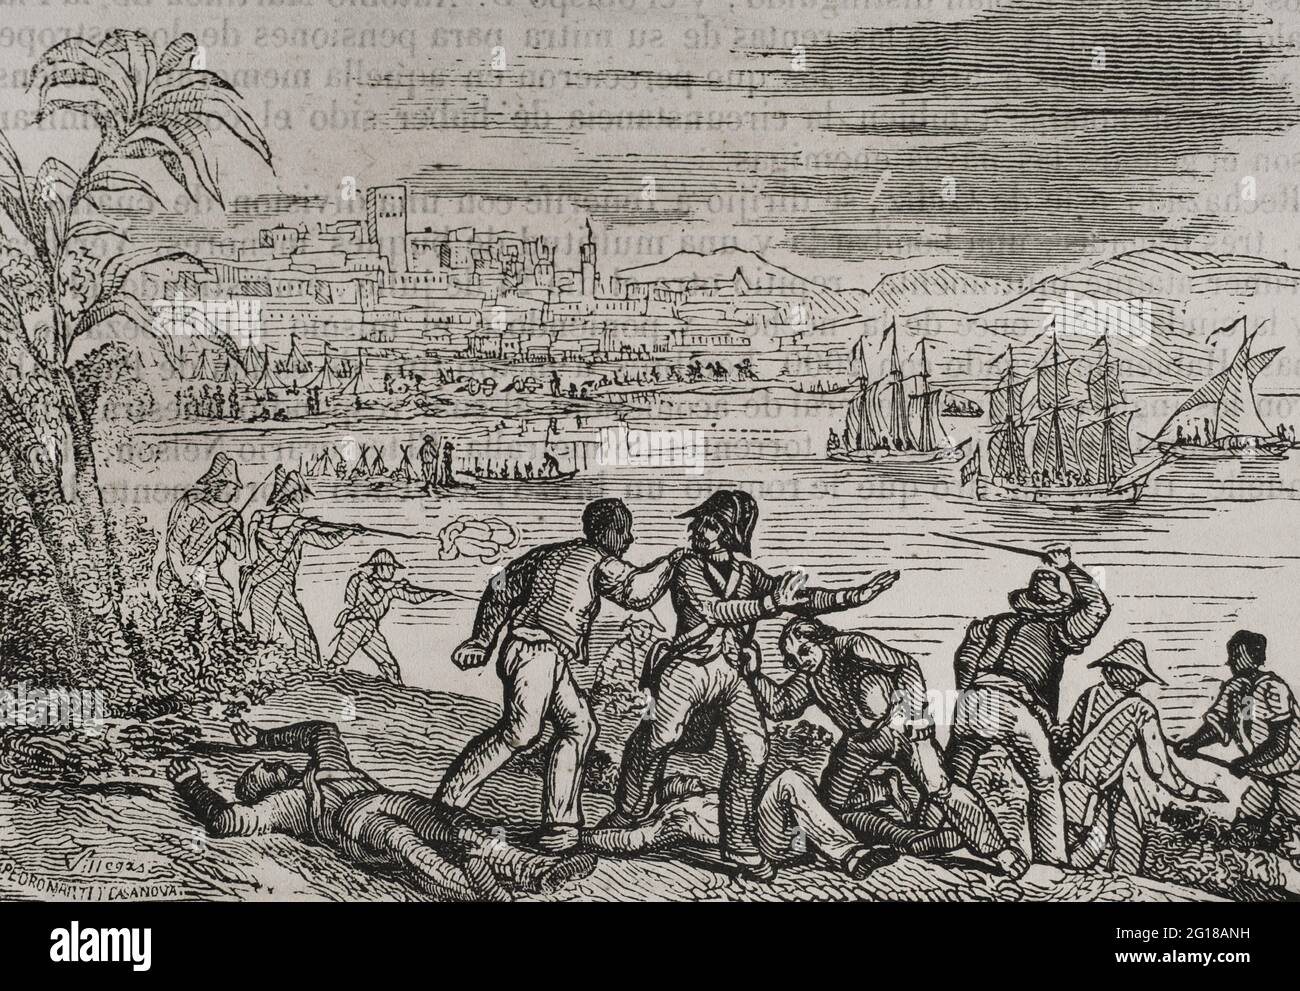 Anglo-Spanischer Krieg (1796-1802). Angriff auf Puerto Rico (1797). Durch den Vertrag von San Ildefonso im Jahr 1796 wurde Spanien ein Feind Großbritanniens. Die Briten schickten eine Flotte in die Karibik, um die Inseln Trinidad und Puerto Rico unter dem Kommando von Admiral Henry Harvey zu erobern. Sie erreichten die Kapitulation von Trinidad, wurden aber in Puerto Rico besiegt. Generalleutnant Sir Ralph Abercromby drang in die Insel Puerto Rico ein, die von den spanischen Truppen unter der Führung von Ramón de Castro und der von Rafael Conti kommandierten Miliz der Hauptstadt verteidigt wurde. Niederlage der Briten in Puerto Rico während der Schlacht von San Juan Stockfoto